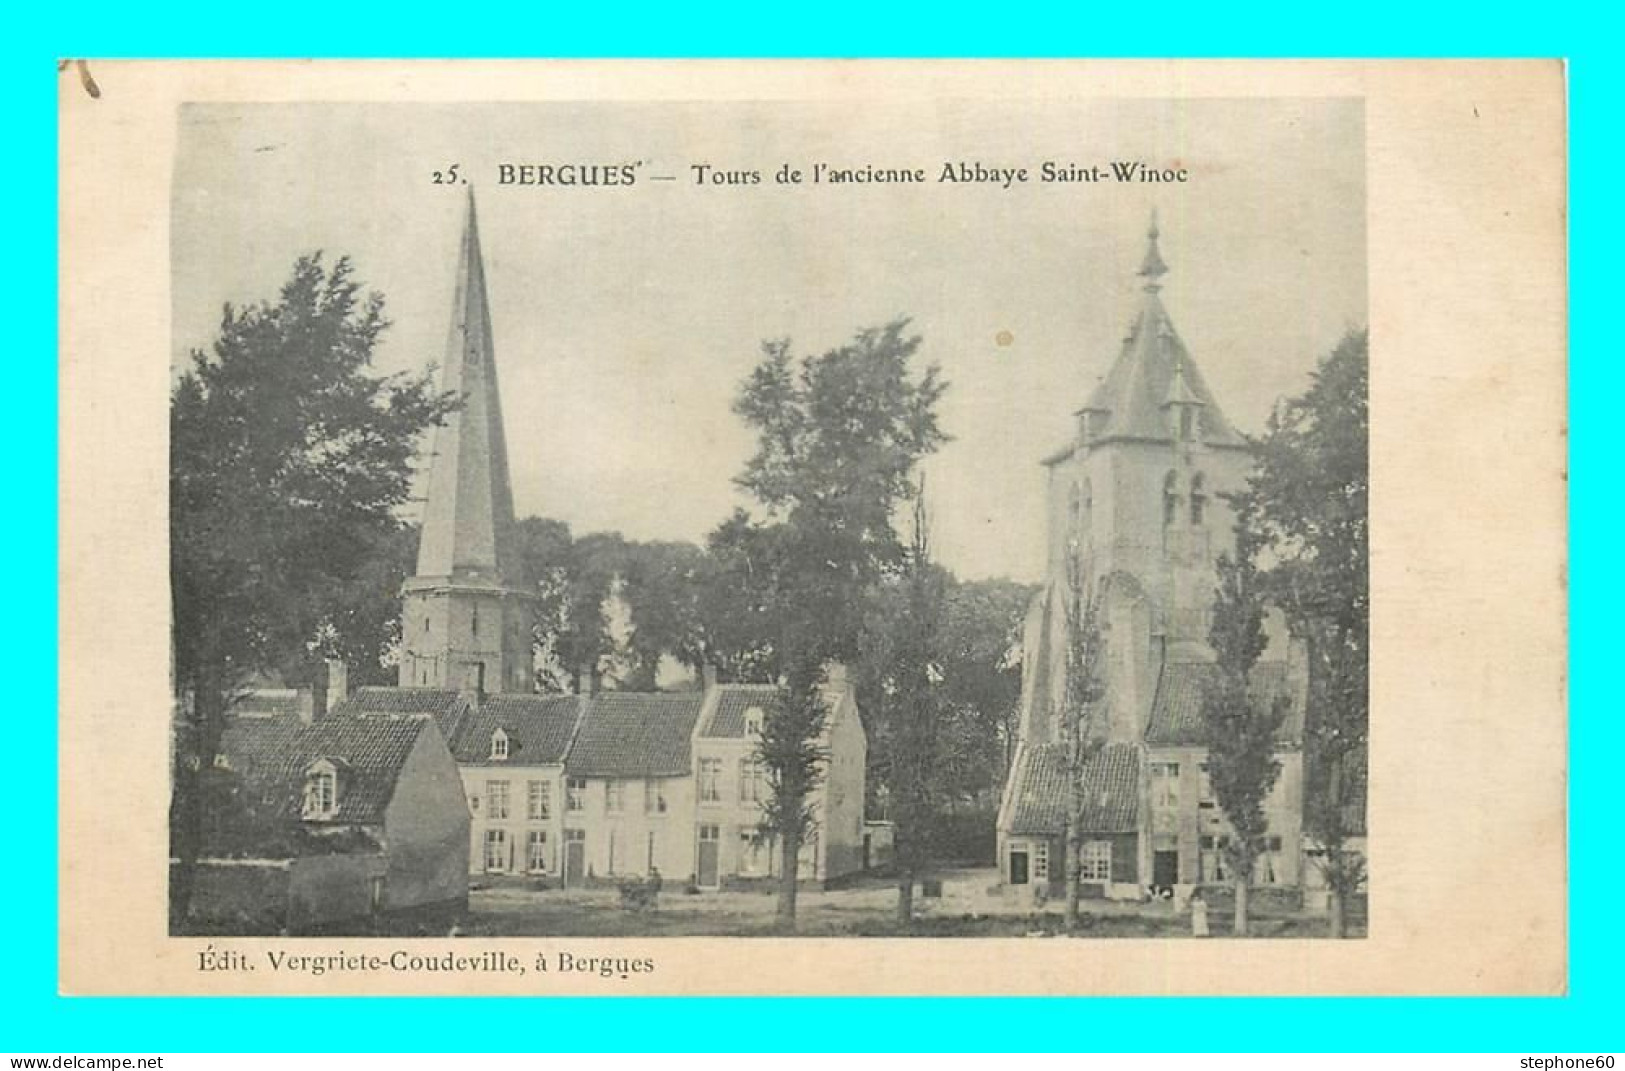 A862 / 053 59 - BERGUES Tours De L'ancienne Abbaye Saint Winoc - Bergues